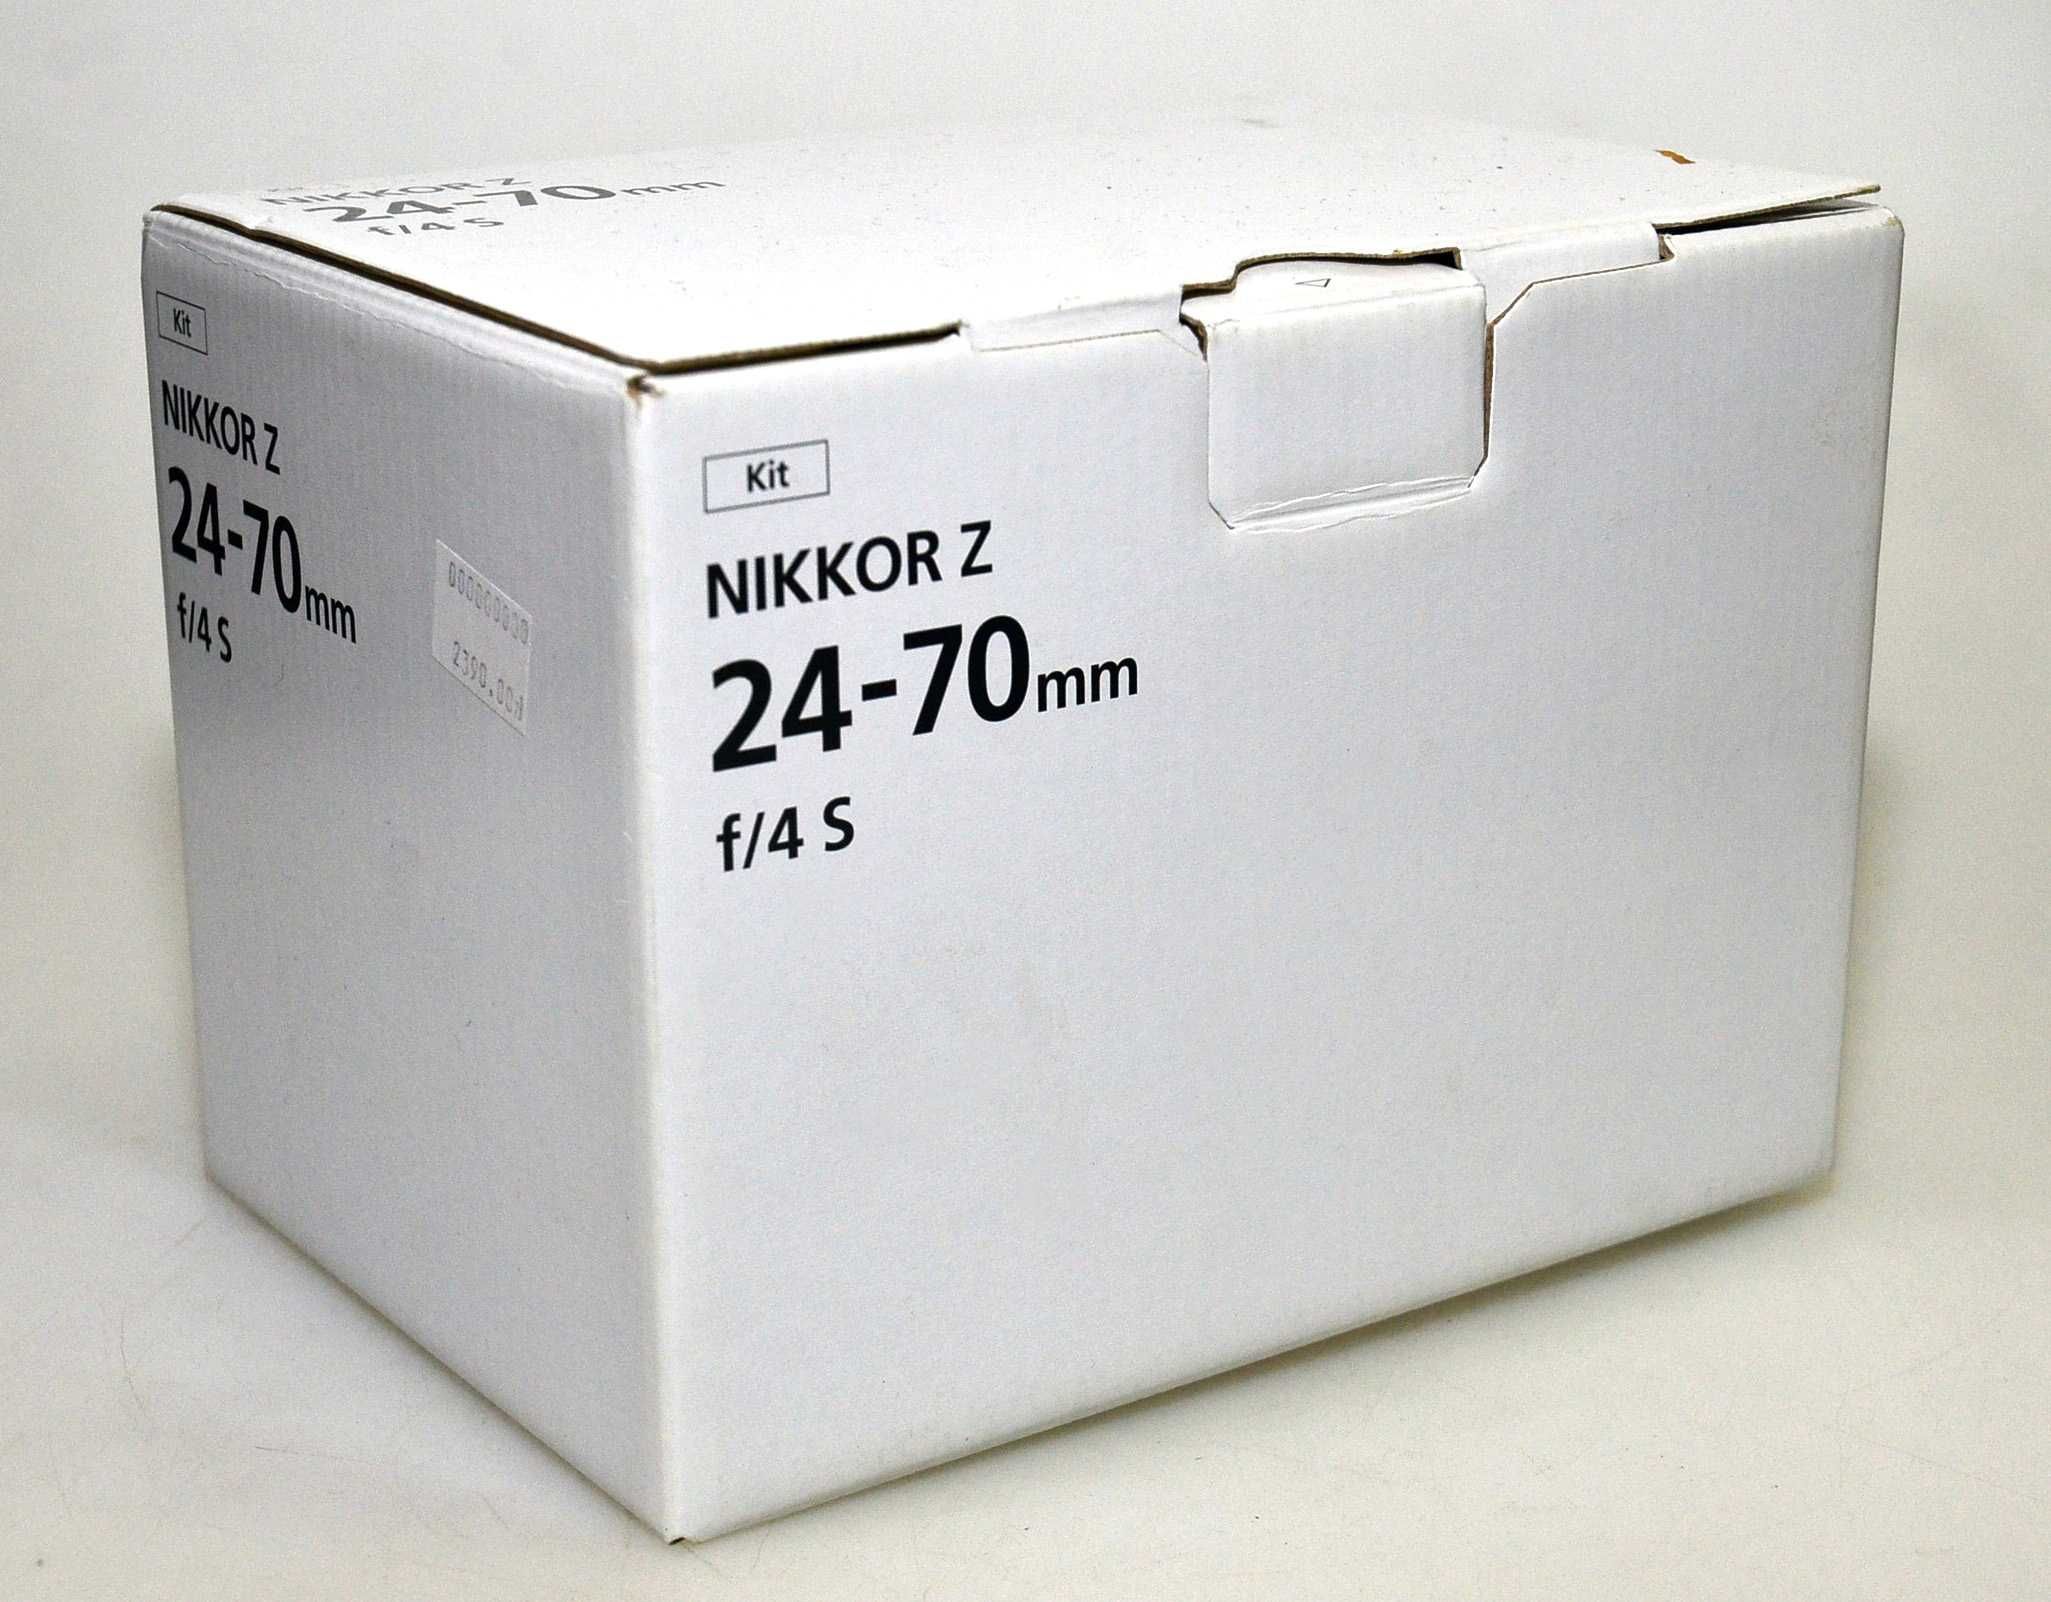 Obiektyw Nikon Nikkor Z 24-70 F/4 S. Gwarancja!